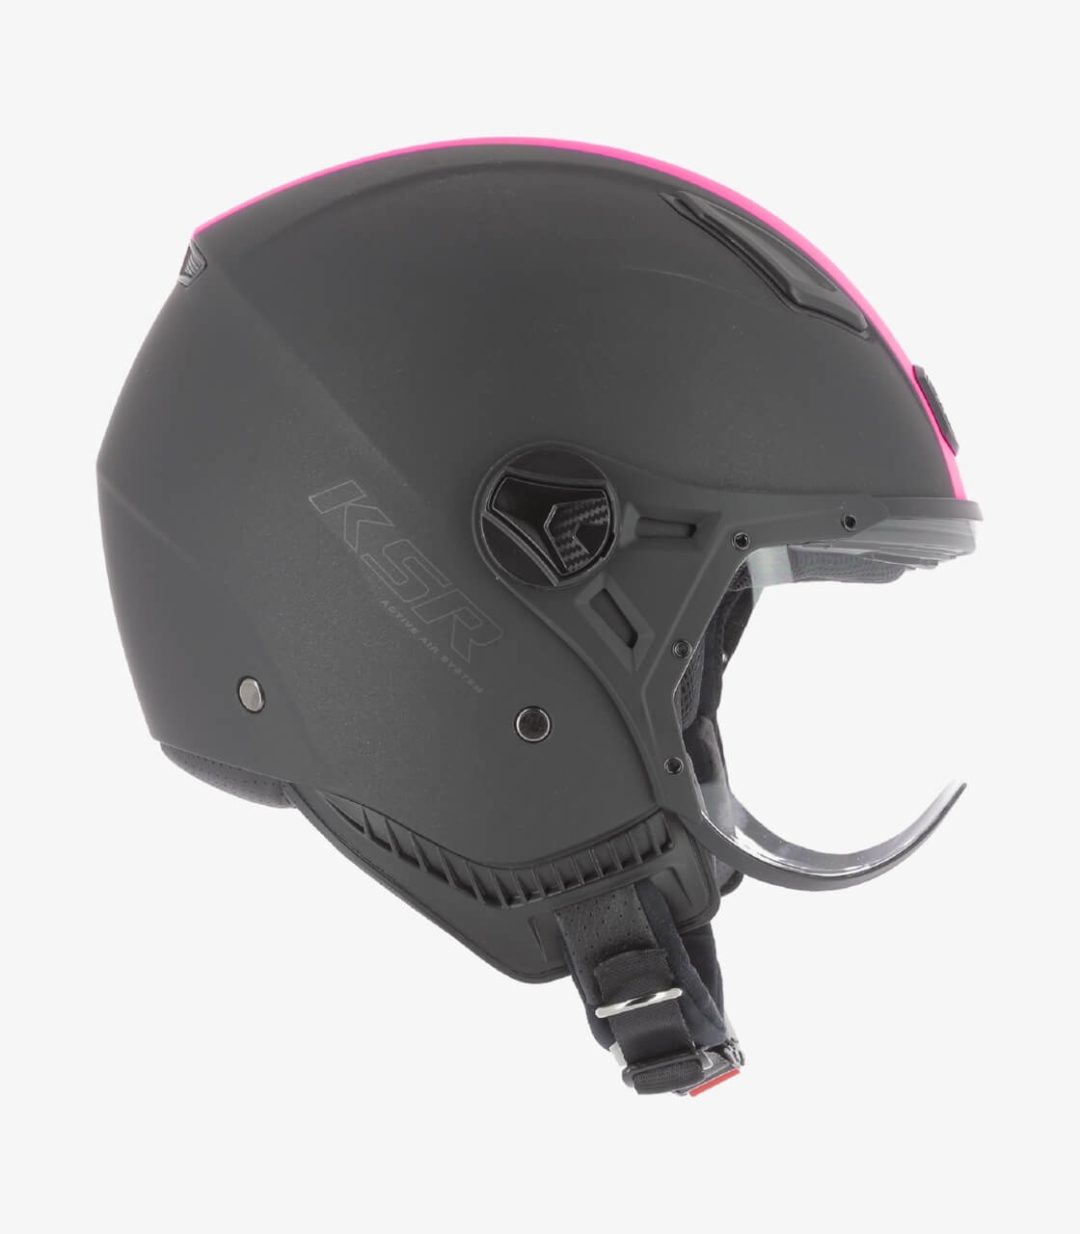 astone-ksr-2-matt-black-pink-open-face-helmet-ksr2g-mbp (3)